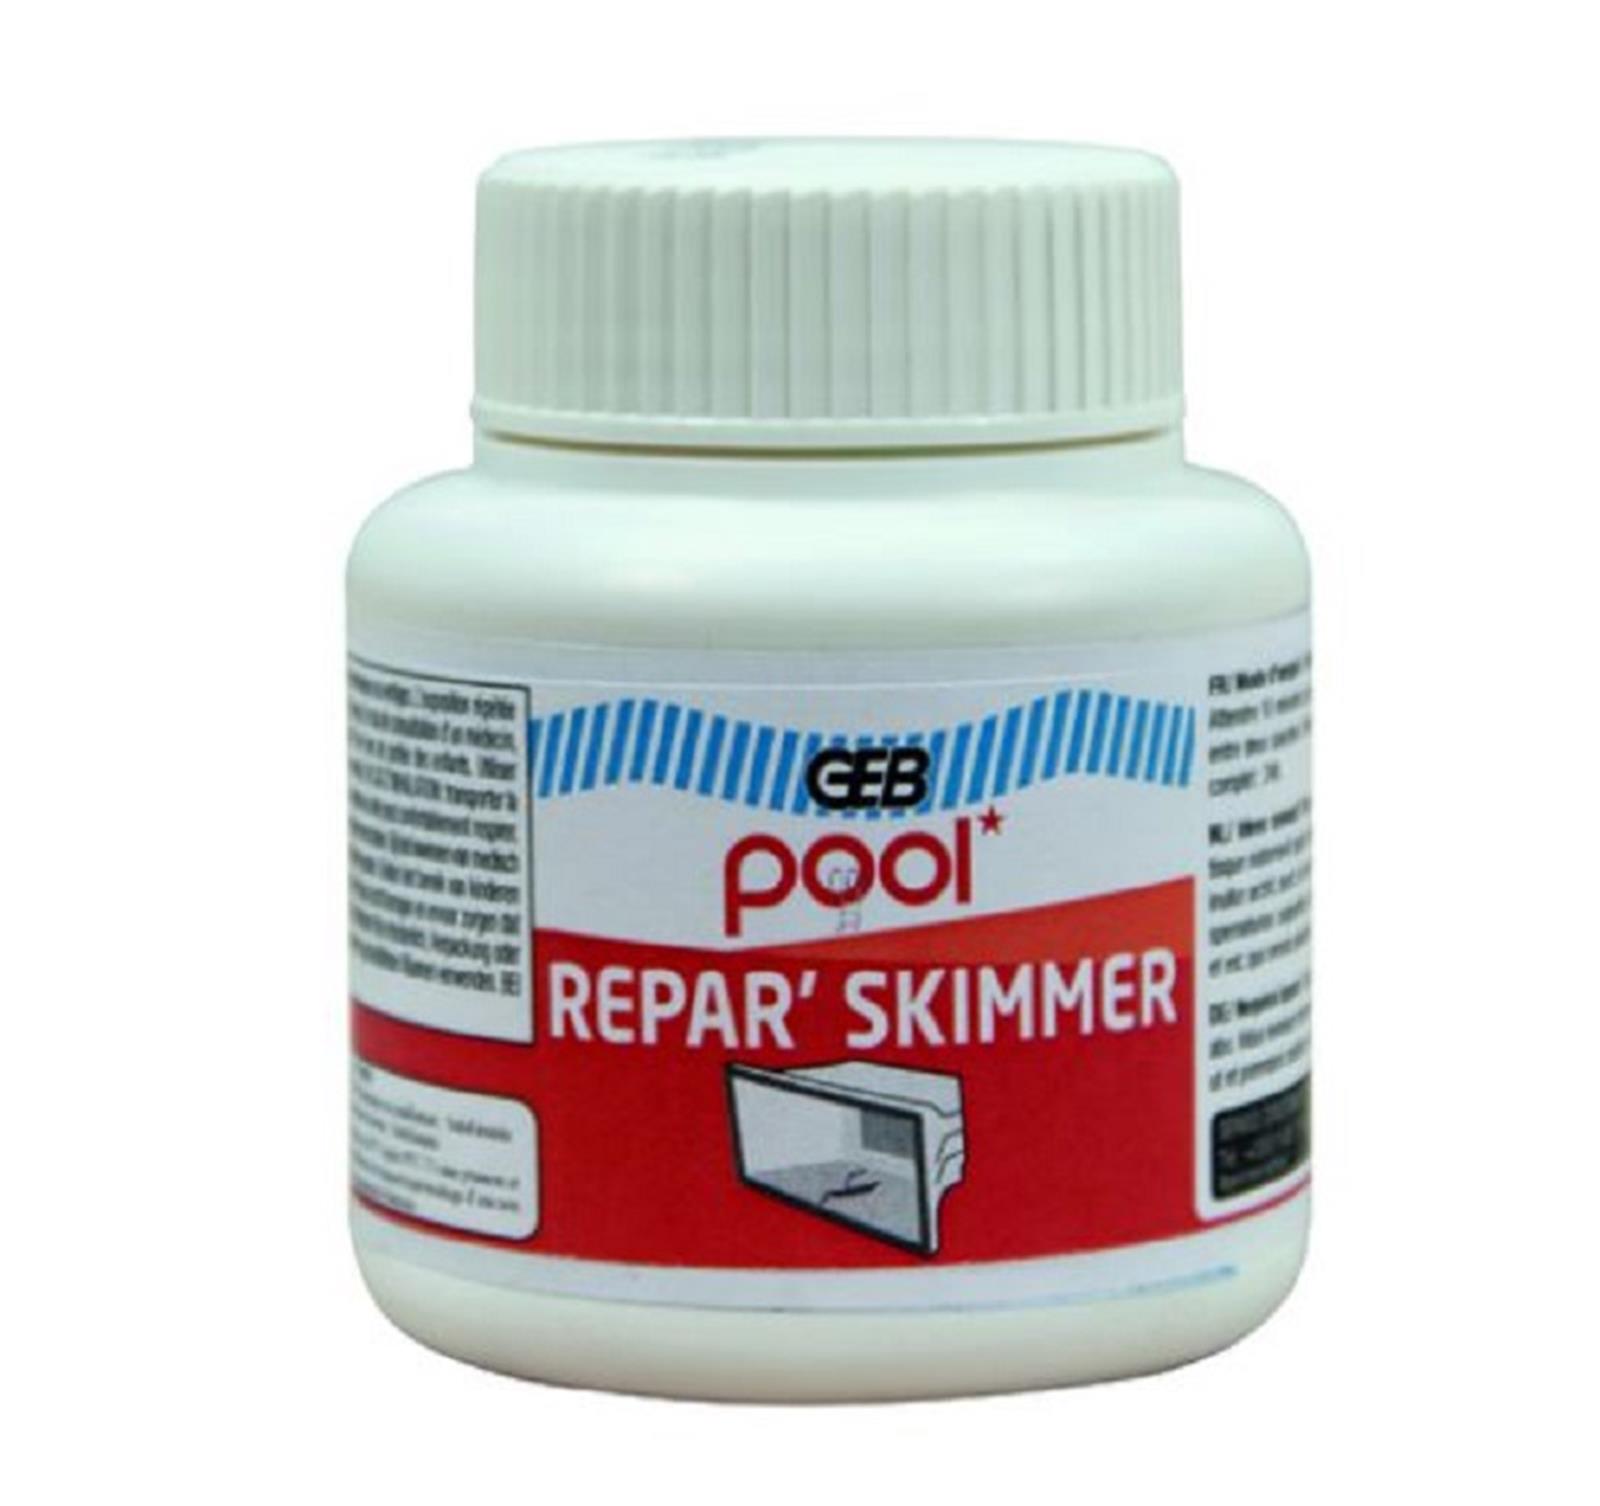 POOL REPAR’SKIMMER - Pool Repar'skimmer - Pot de 125 ml